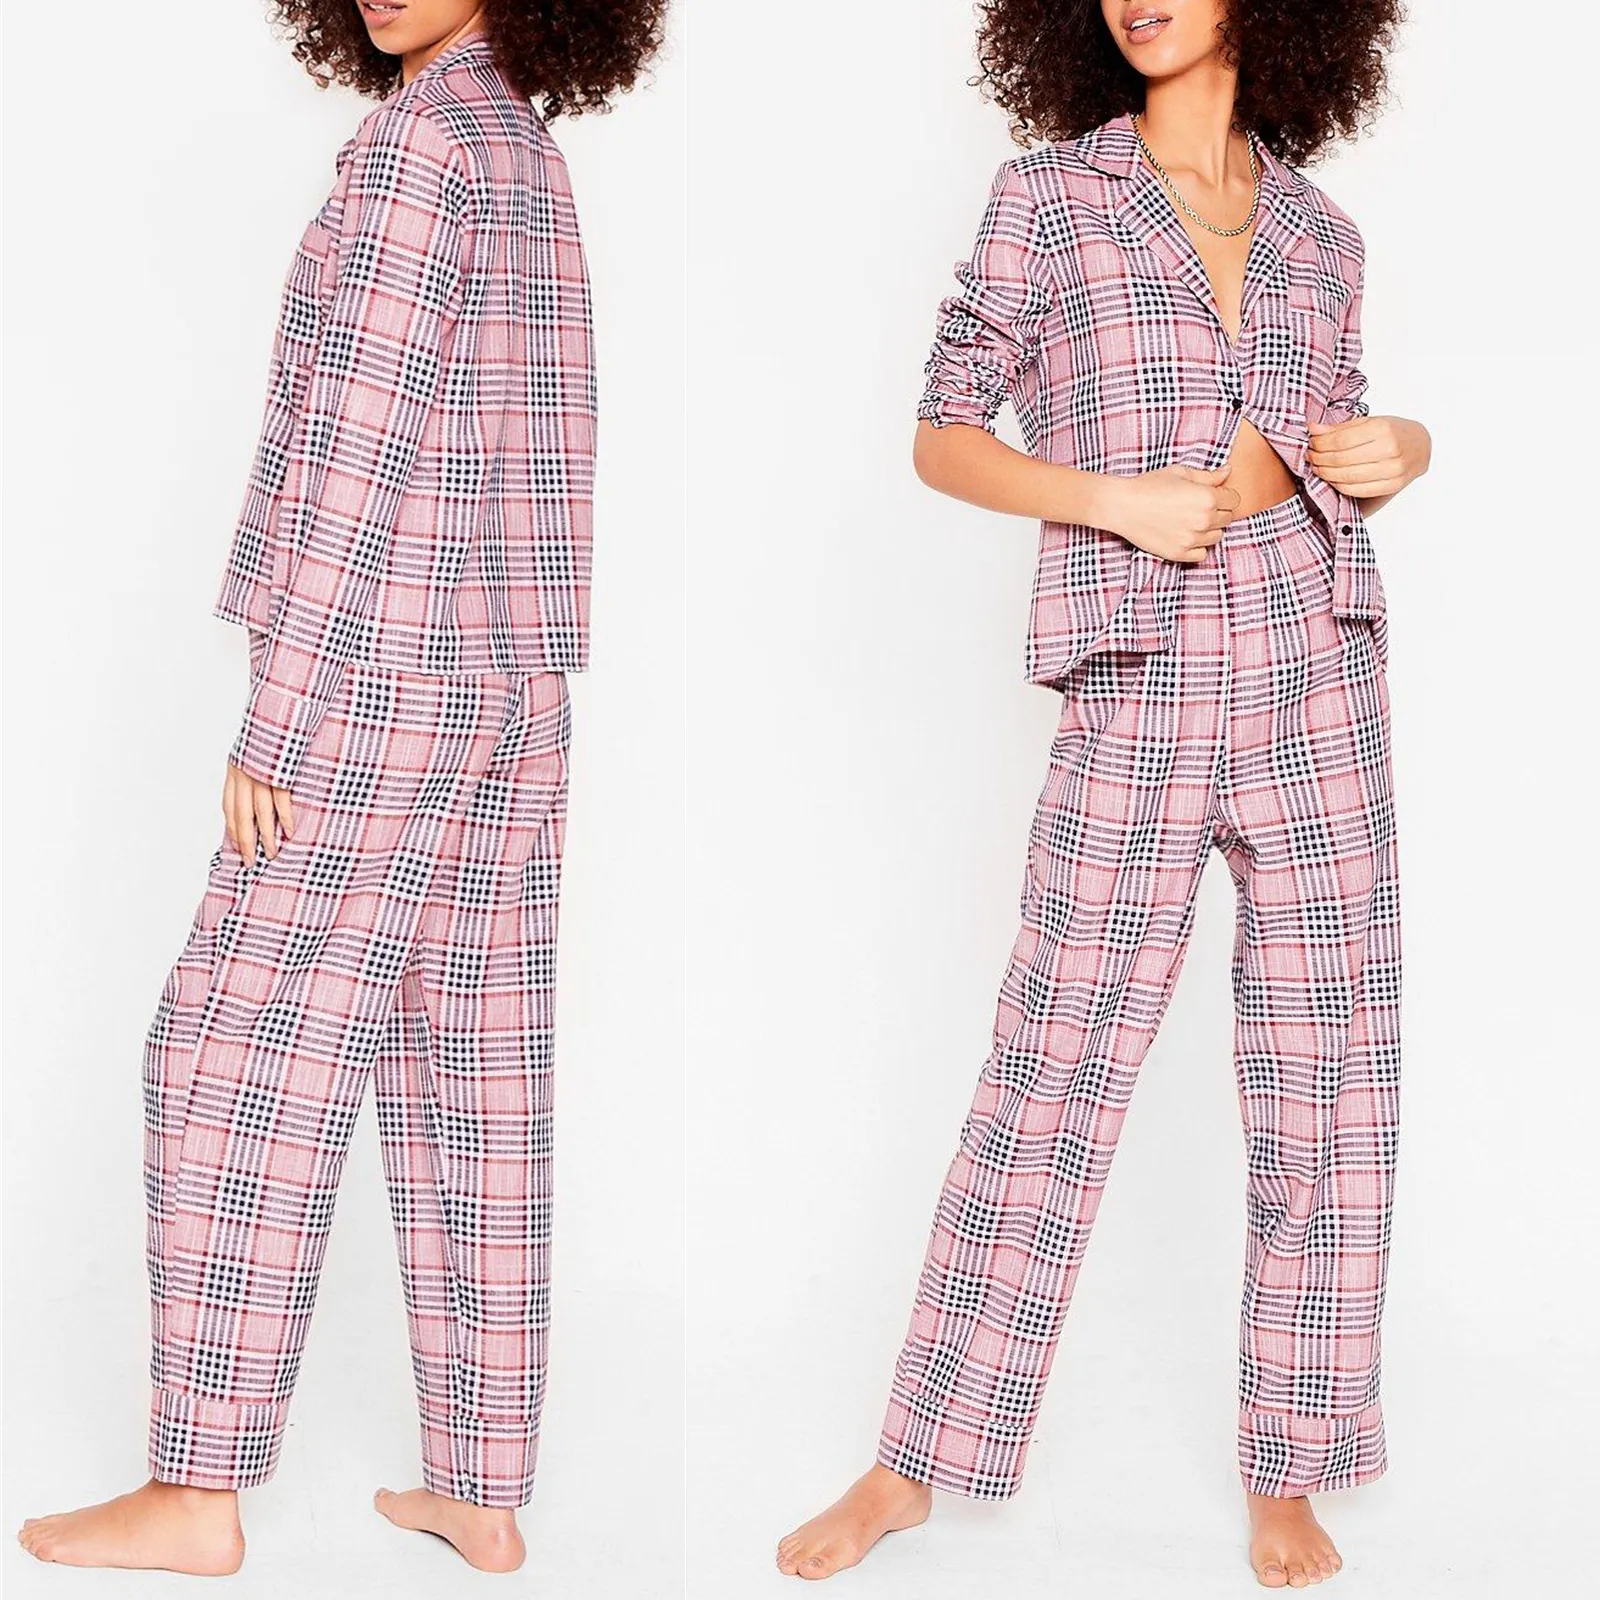 Kunden Verfügbar Touch Gefühl 3A Qualifizierte NewDesign Hersteller China Pyjamas Set Nachtwäsche